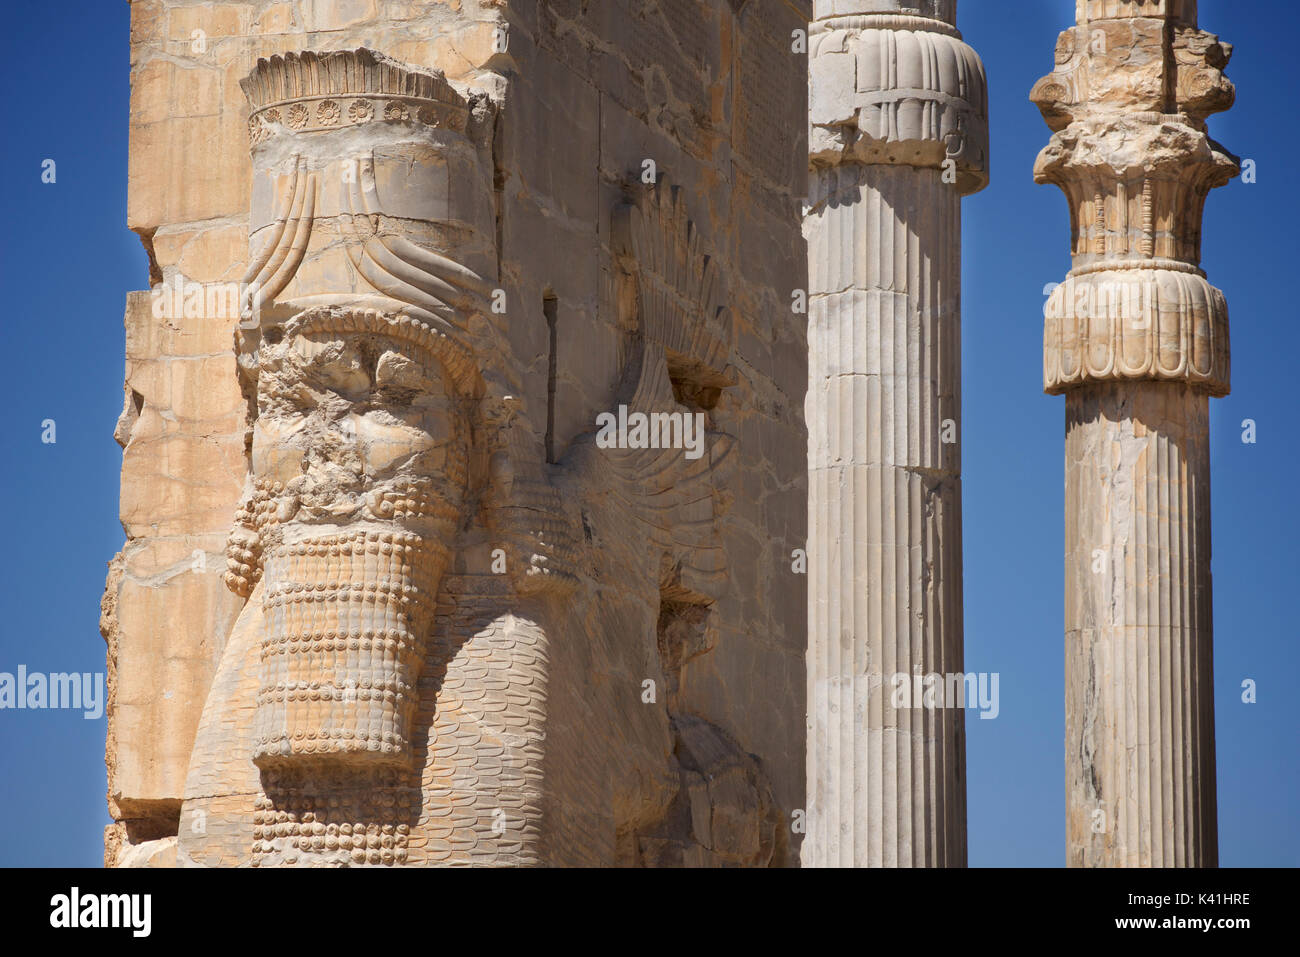 La porta di tutte le nazioni, Persepolis, Iran. lamassus, tori con le teste di uomo barbuto Foto Stock